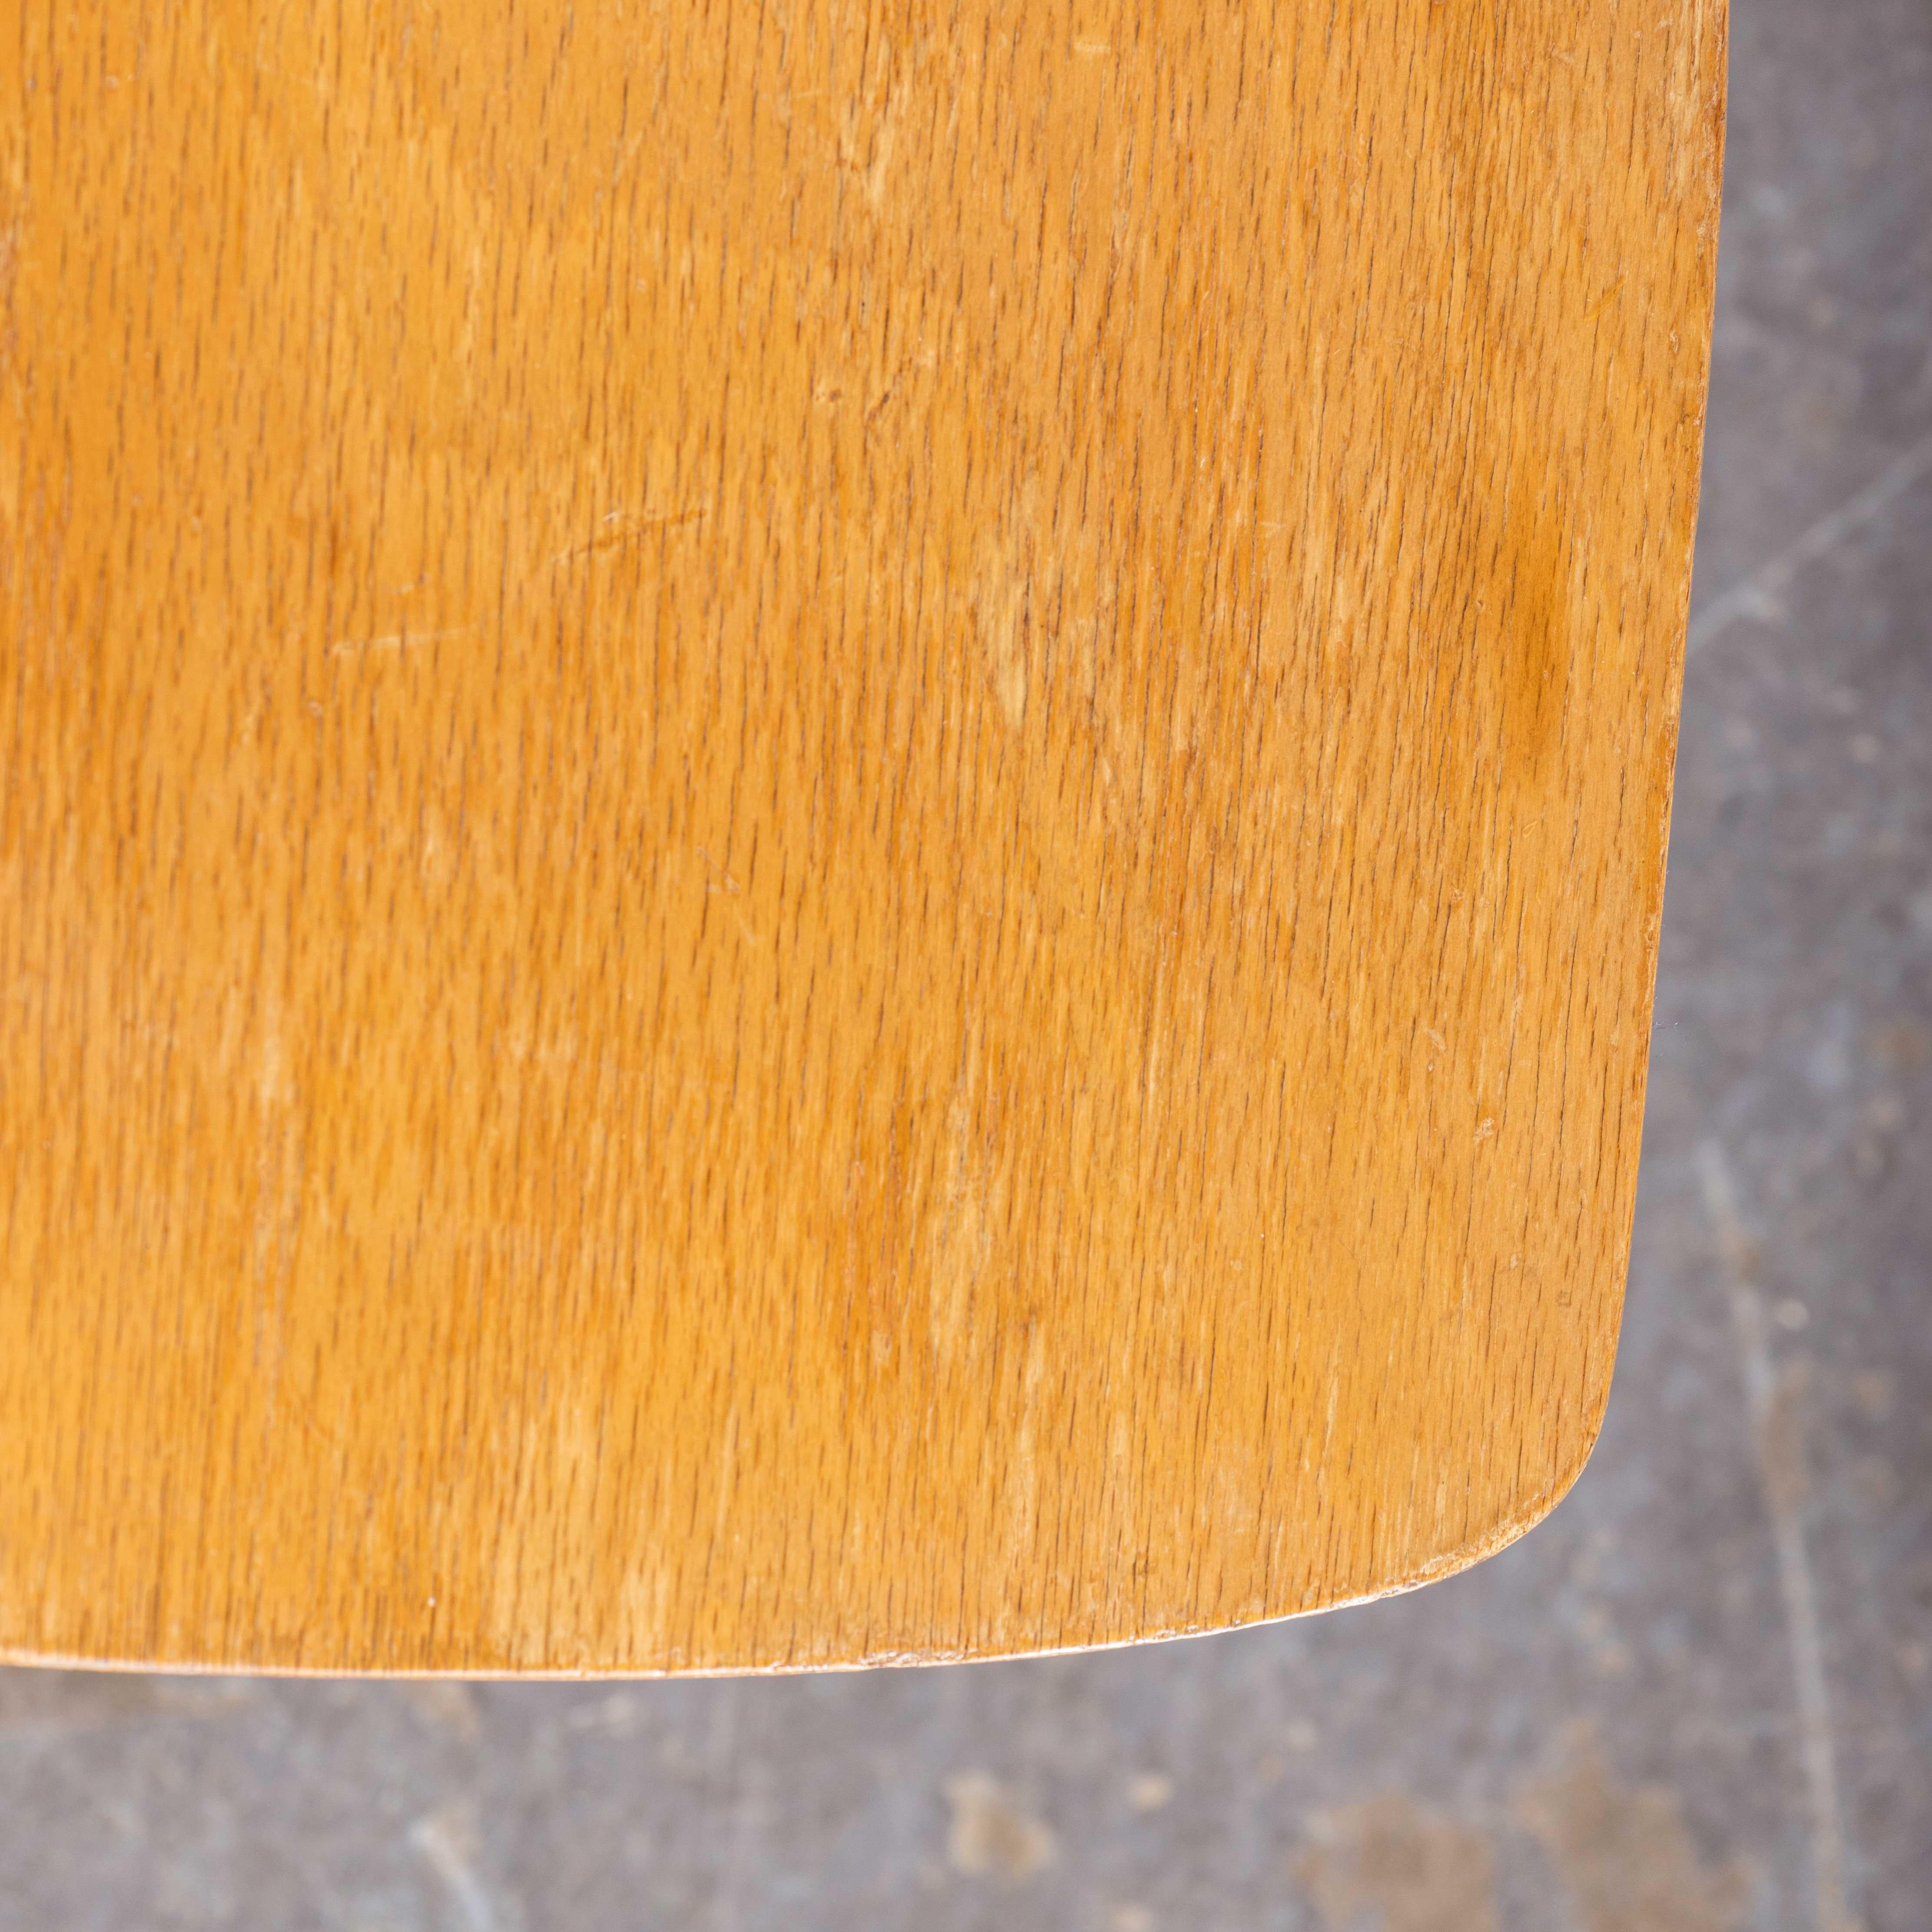 1950 Luterma Blonde Bentwood Dining Chairs - Set Of Three
1950s Luterma Blonde Bentwood Dining Chairs - Set Of Three. Le procédé de cintrage du hêtre à la vapeur pour créer des chaises élégantes a été découvert et développé par Thonet, mais lorsque